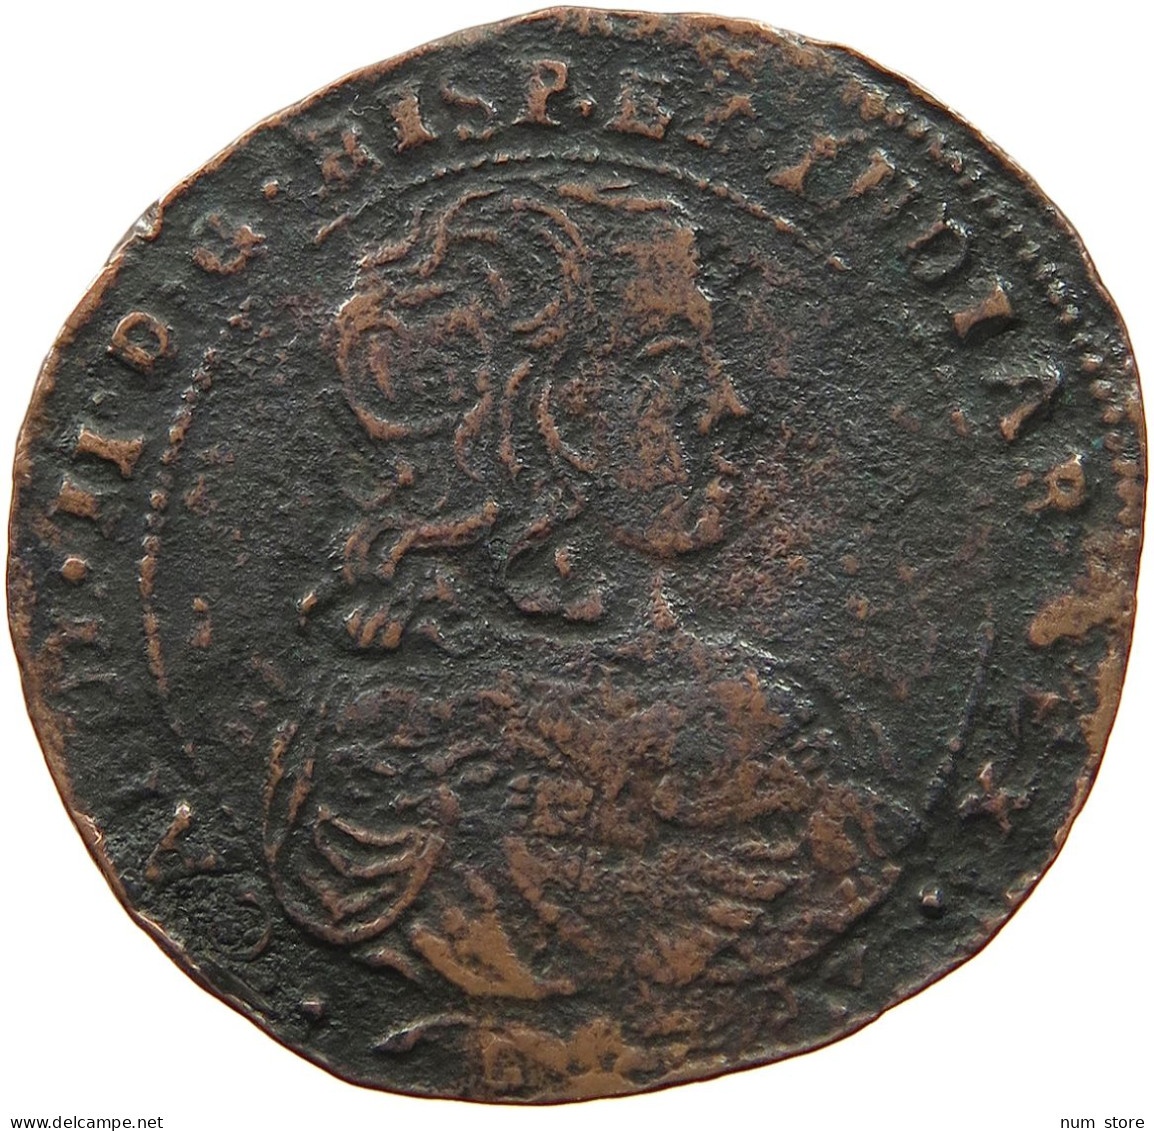 SPANISH NETHERLANDS JETON 1671 CARLOS II (1665-1700) BRUXELLES #t065 0007 - 1556-1713 Spanische Niederlande